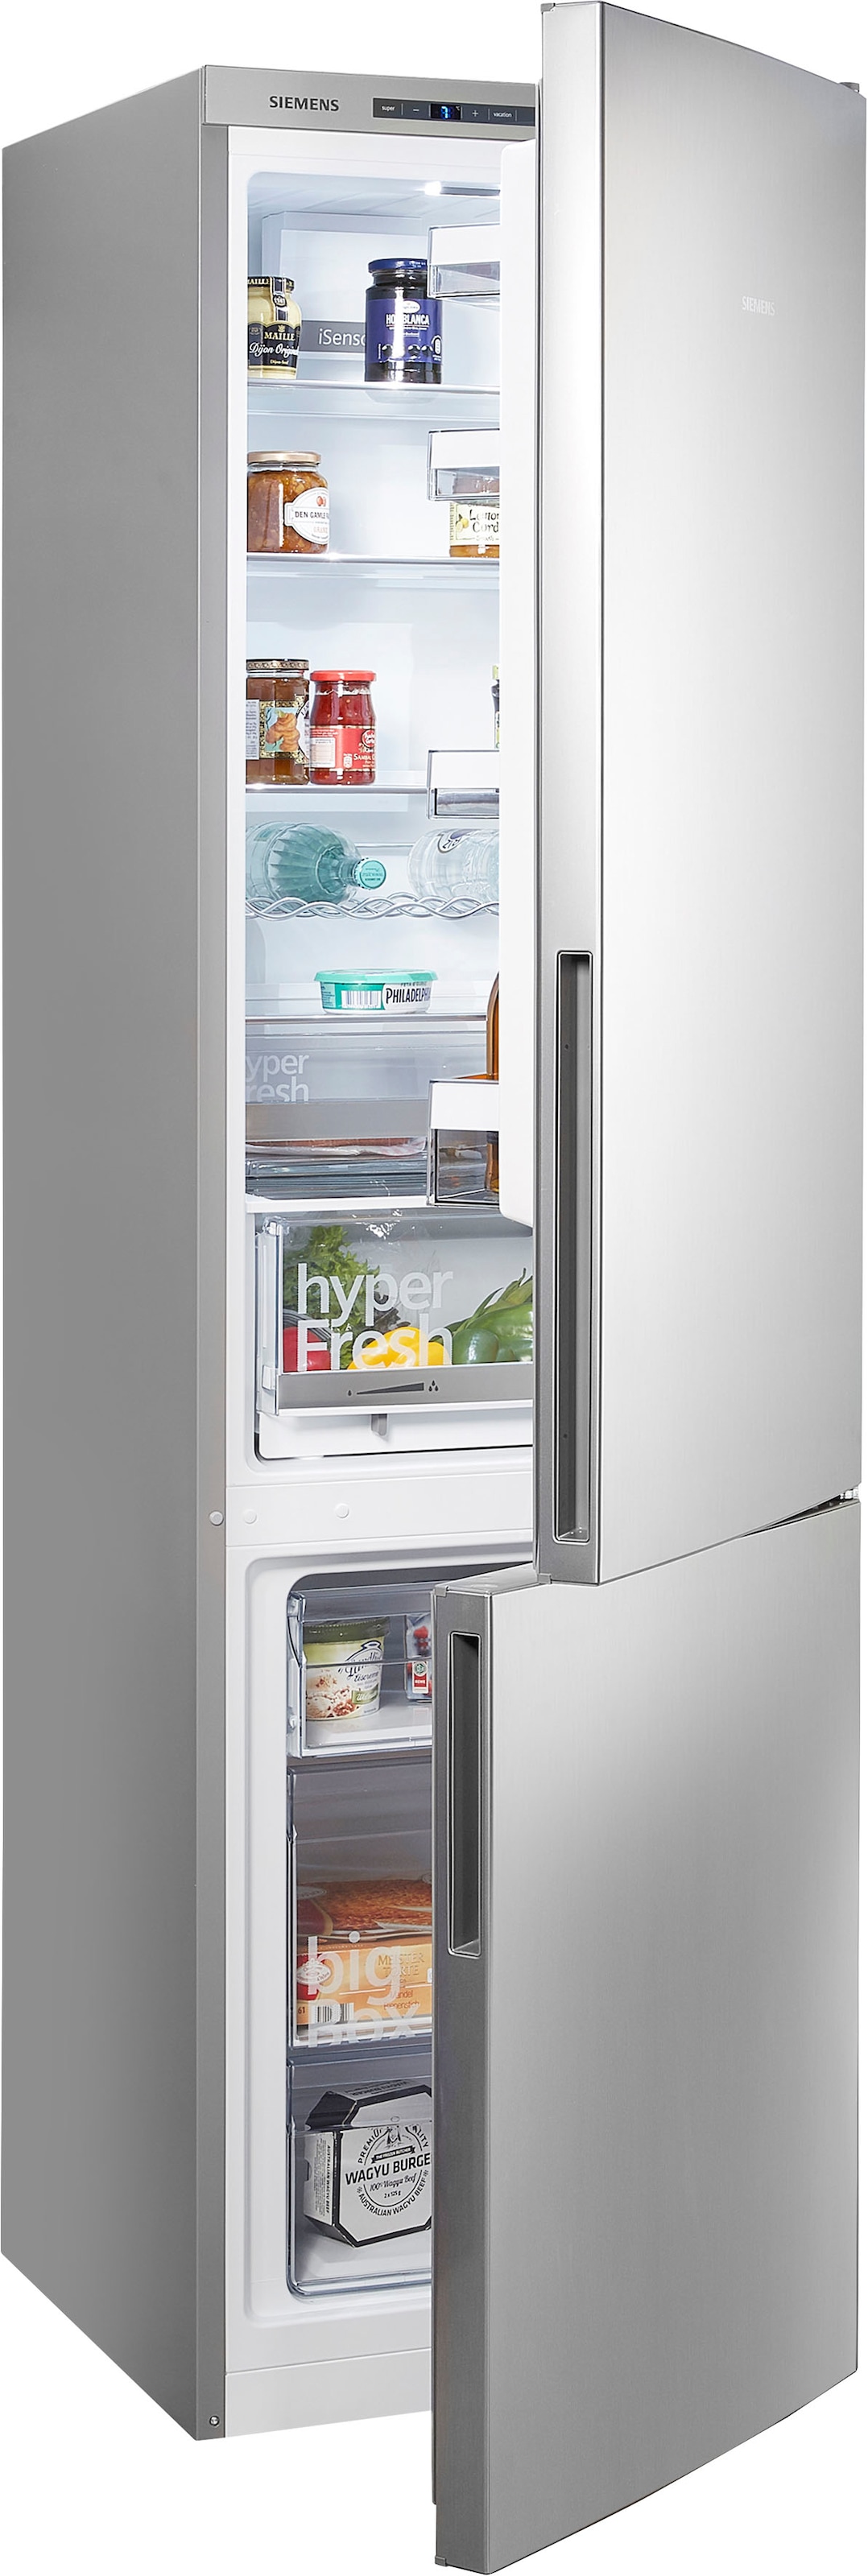 OTTO mit Teilzahlung flexibler Siemens Kühlschränke bei